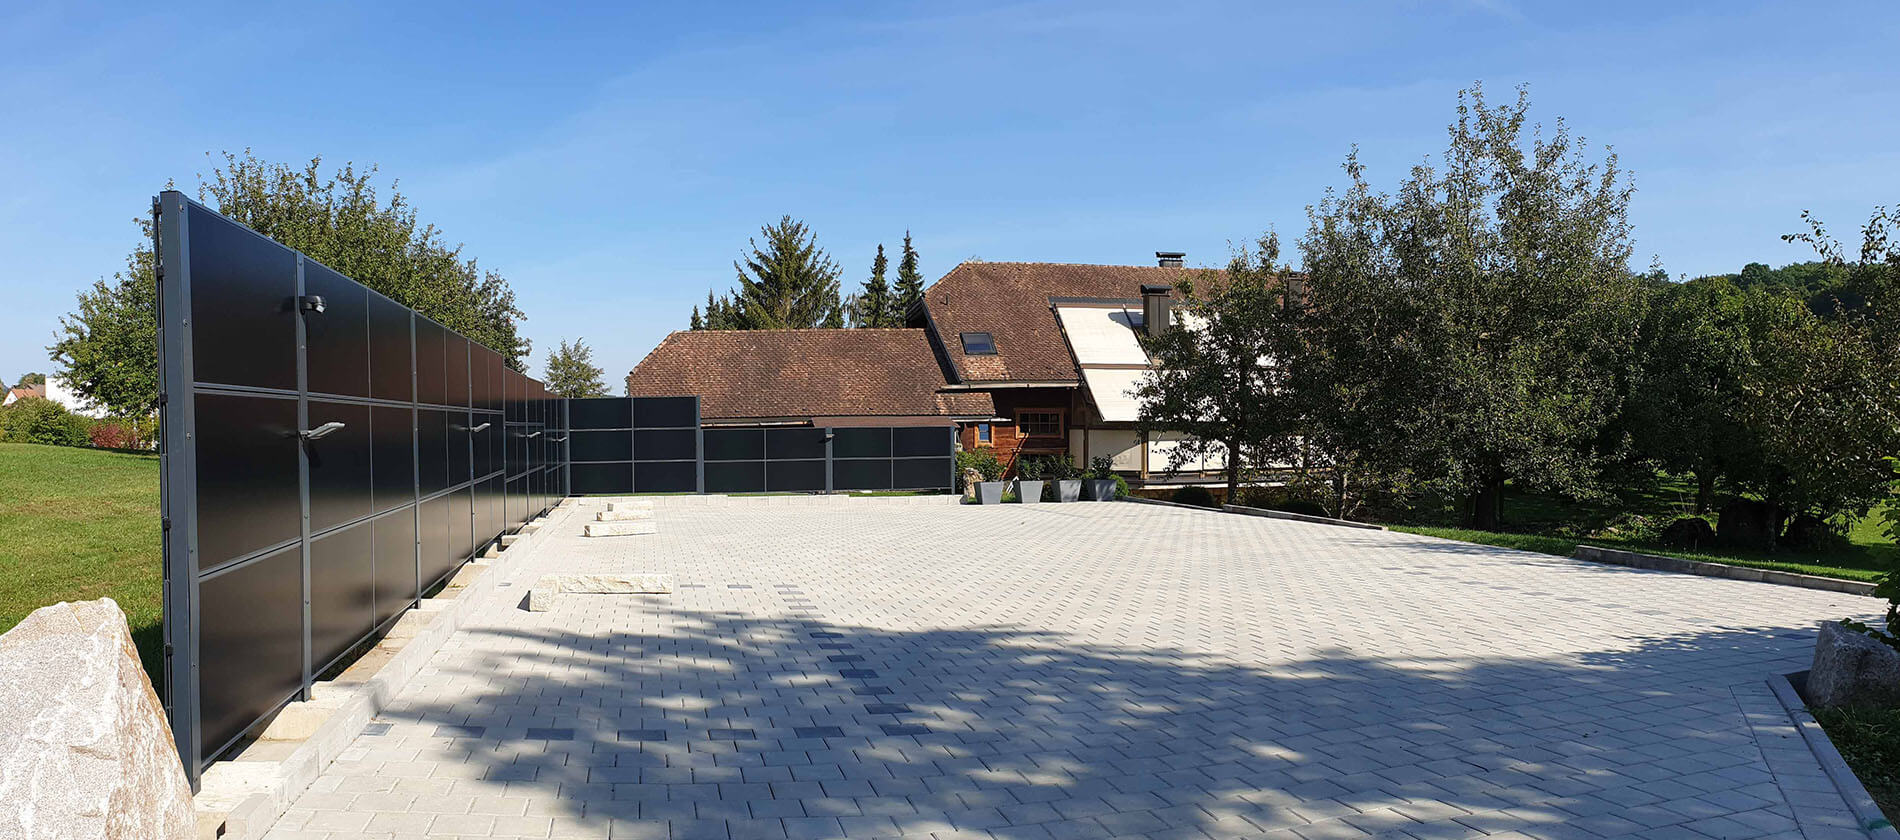 SolarZaun Referenz am Wohnhaus in Gechingen